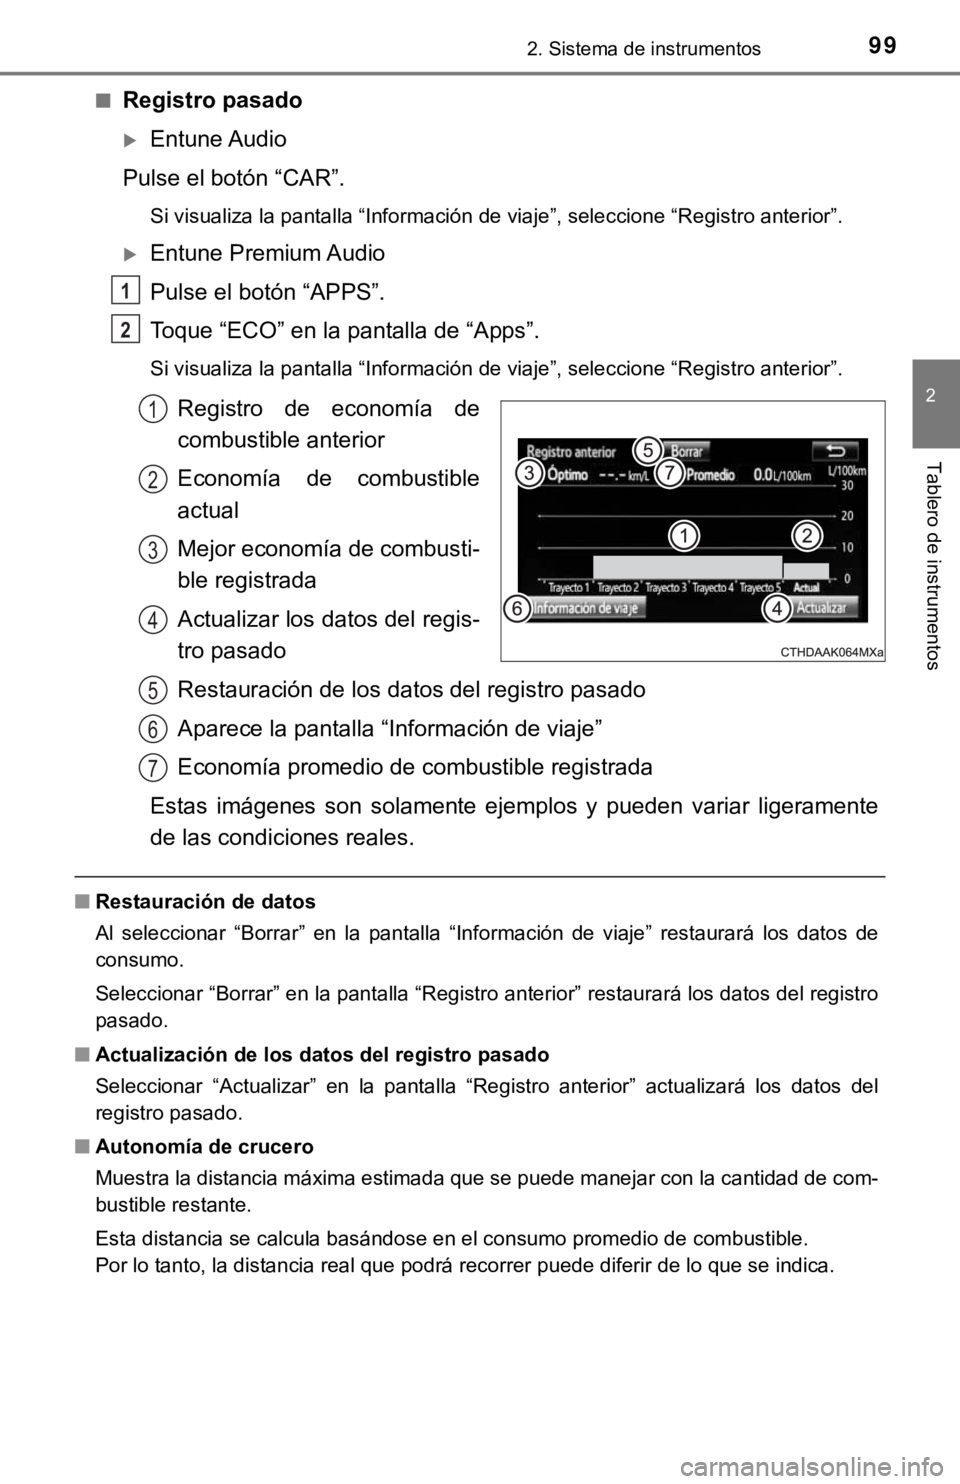 TOYOTA COROLLA 2019  Manual del propietario (in Spanish) 992. Sistema de instrumentos
2
Tablero de instrumentos
■Registro pasado
Entune Audio
Pulse el botón “CAR”.
Si visualiza la pantalla “Información de viaje”, seleccione “Registro anteri